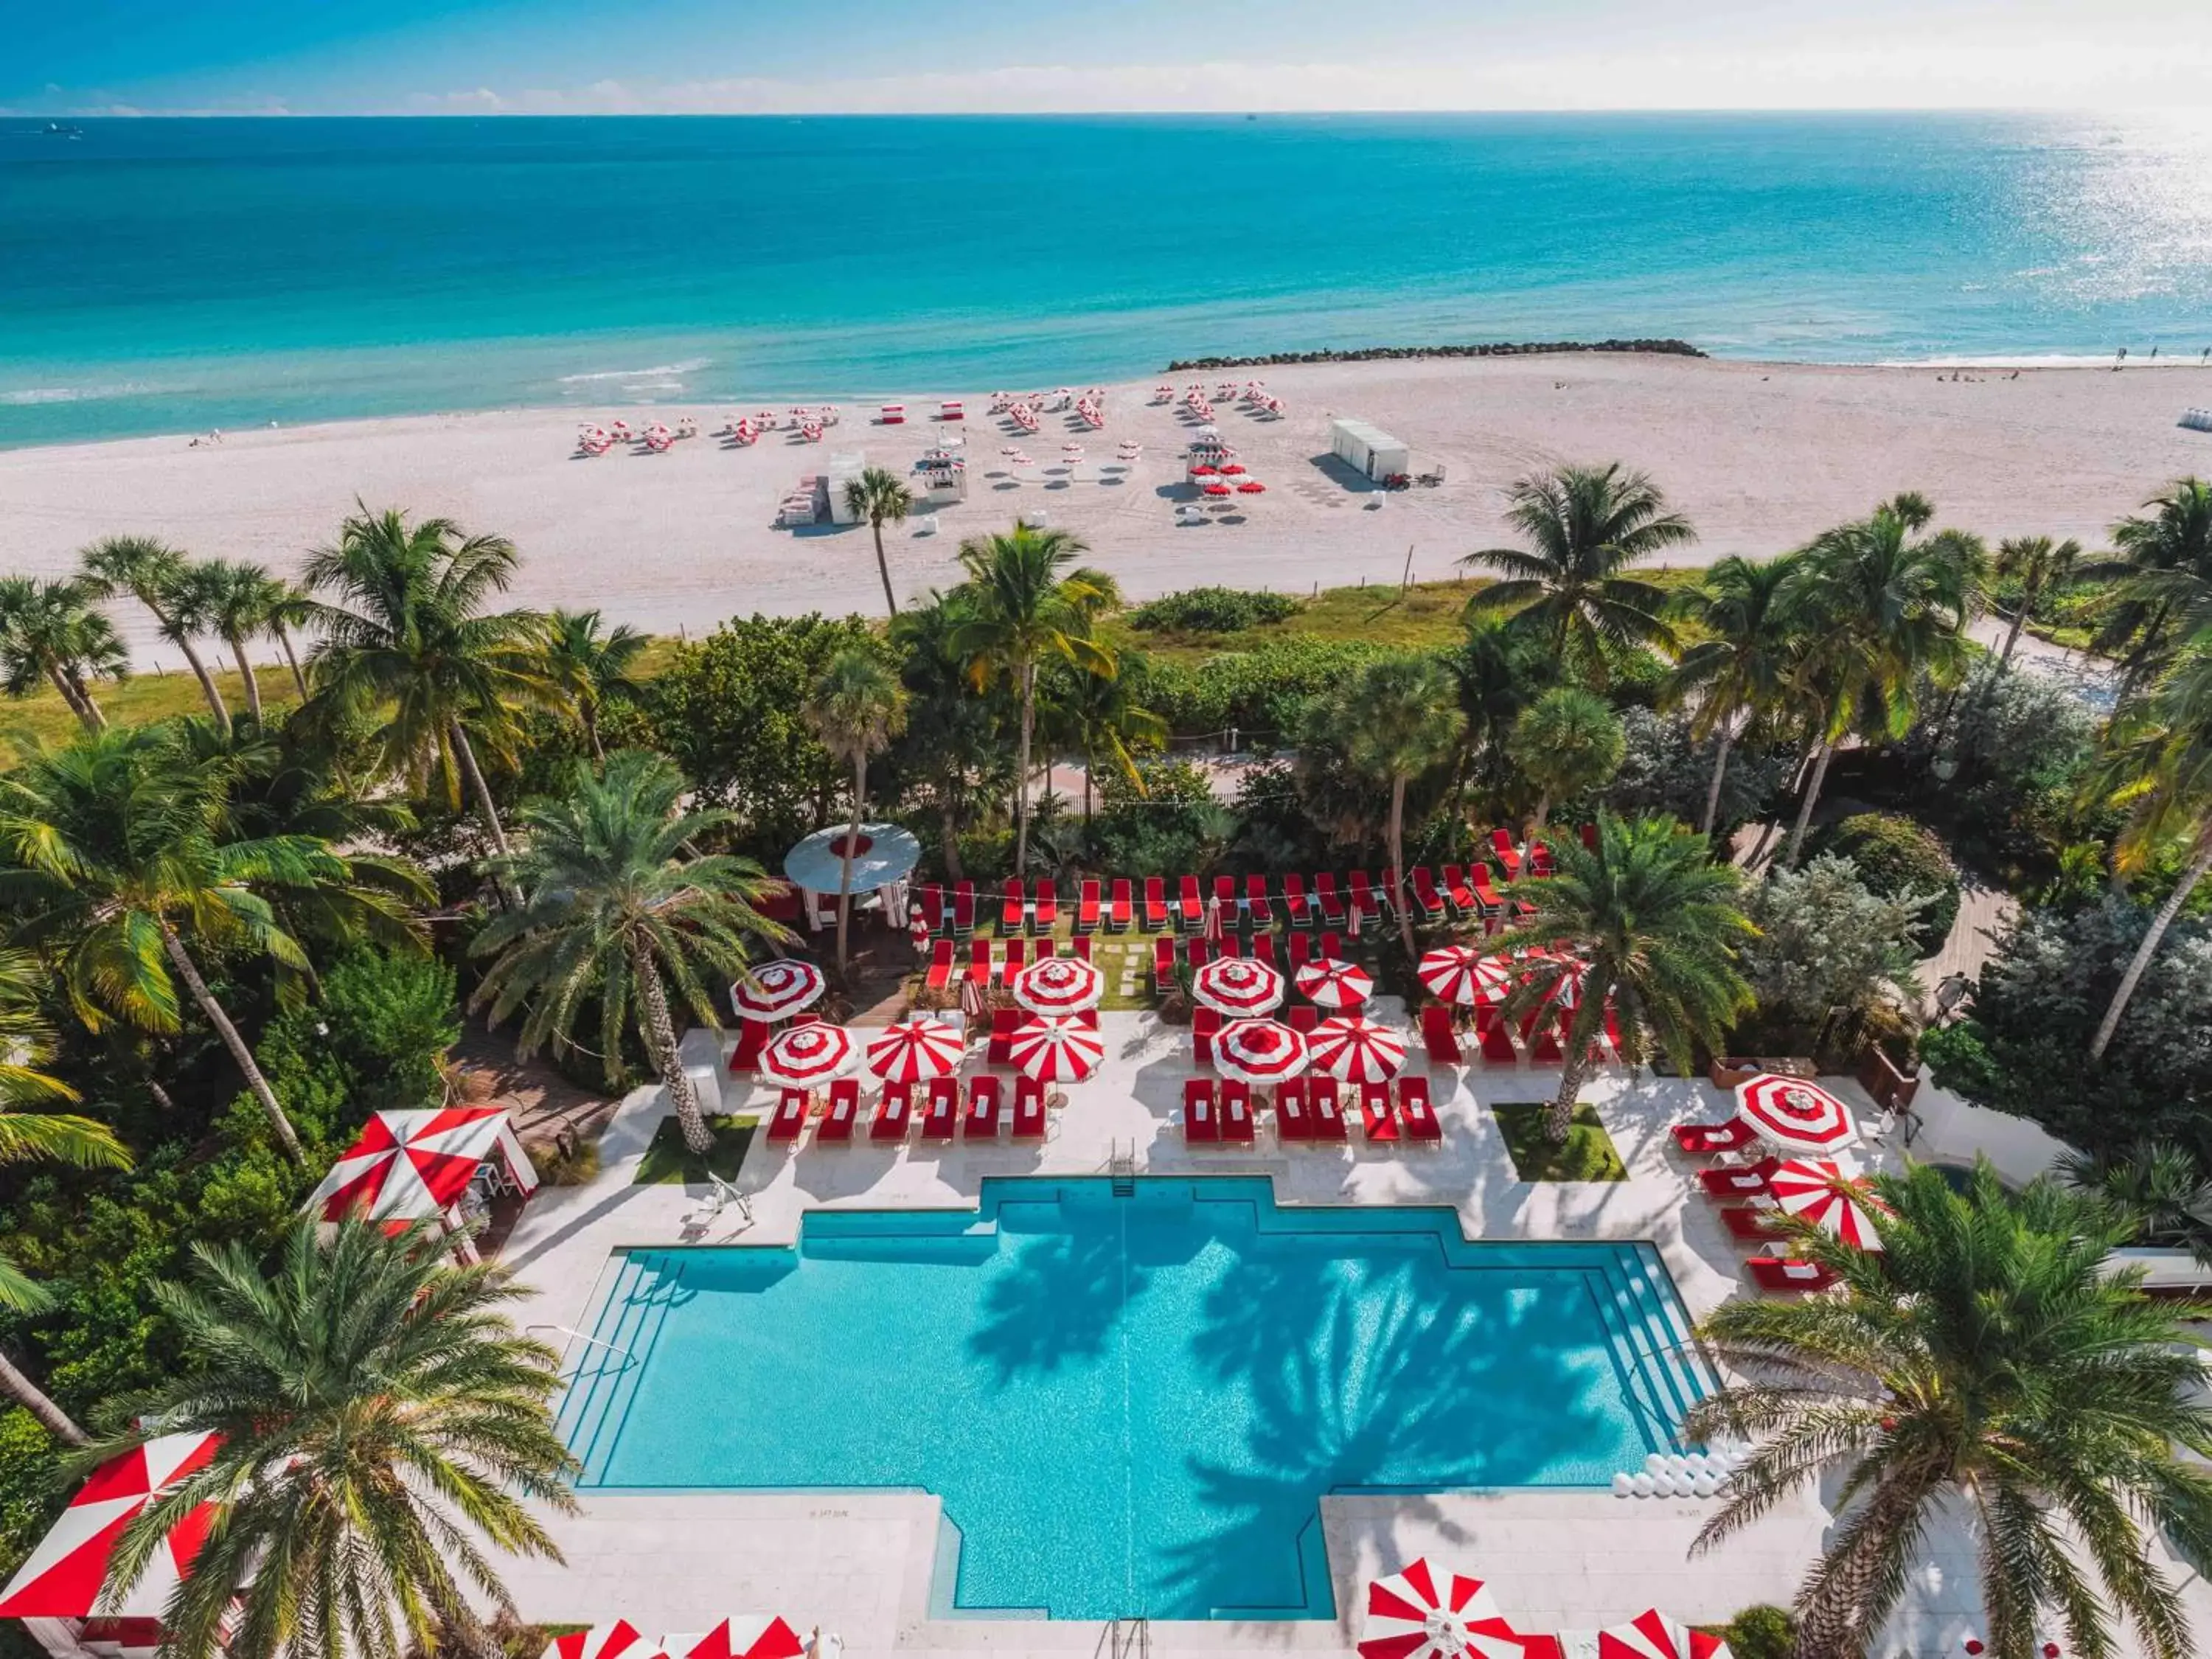 Pool View in Faena Hotel Miami Beach